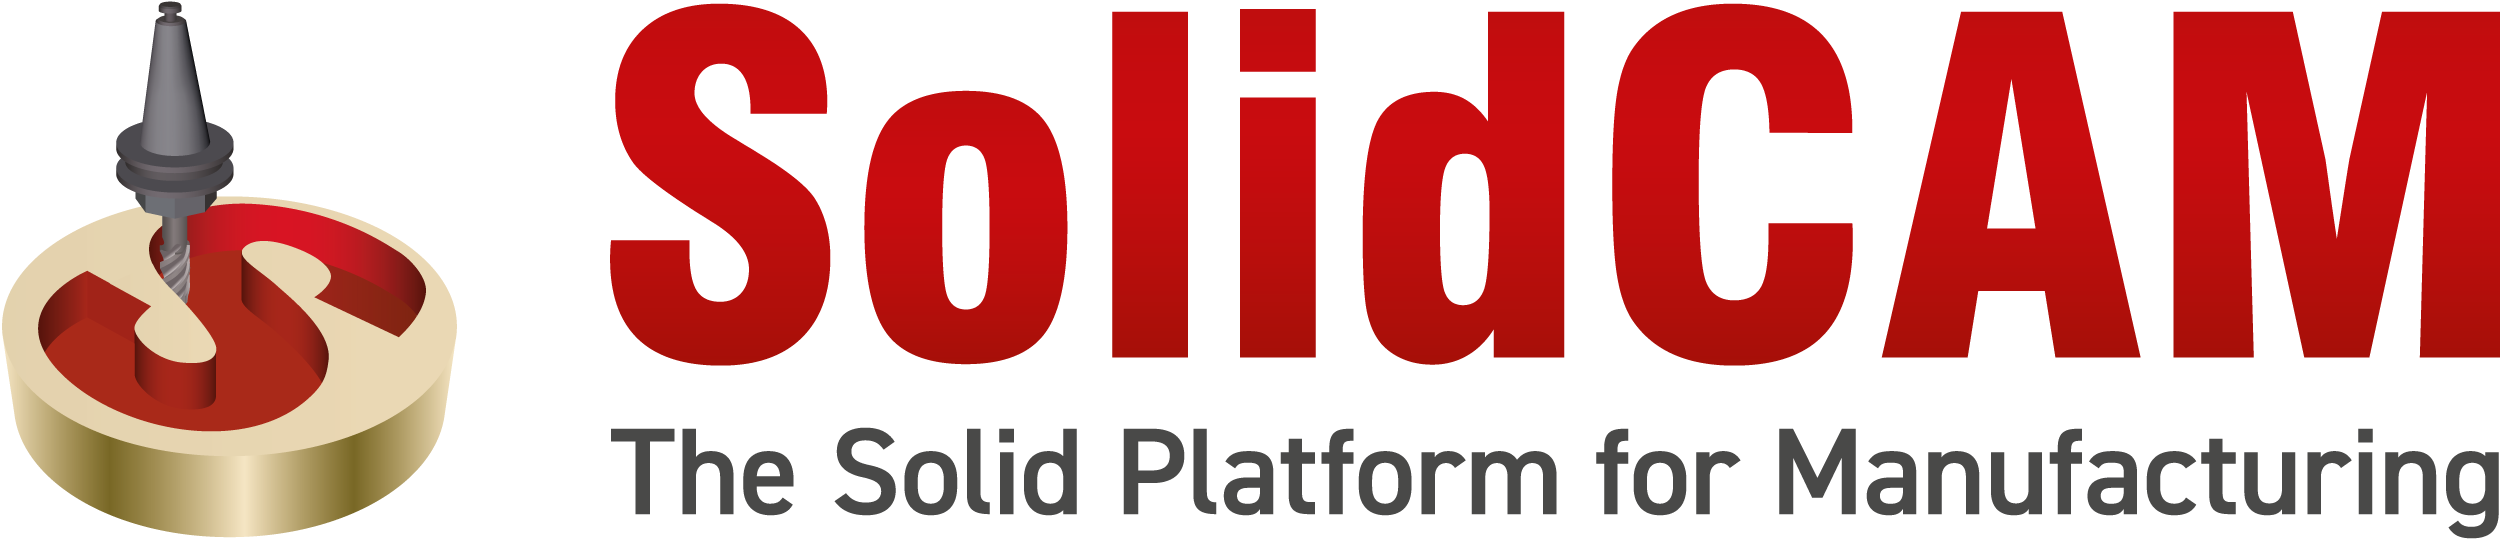 SolidCAM + Logo